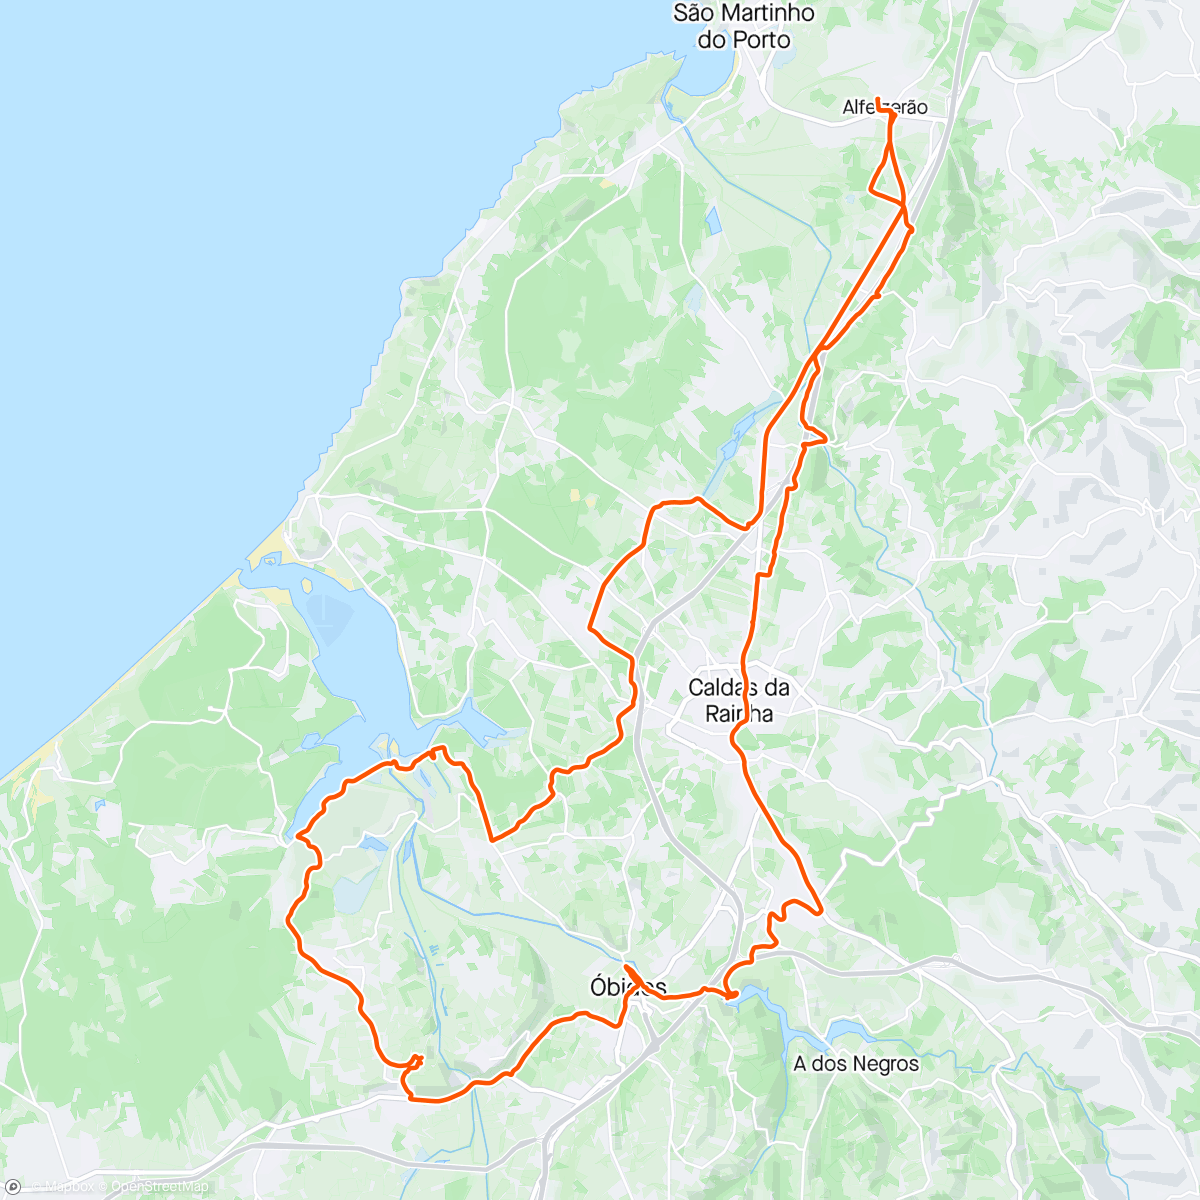 「Volta de bicicleta de montanha matinal, fodassss que calor」活動的地圖